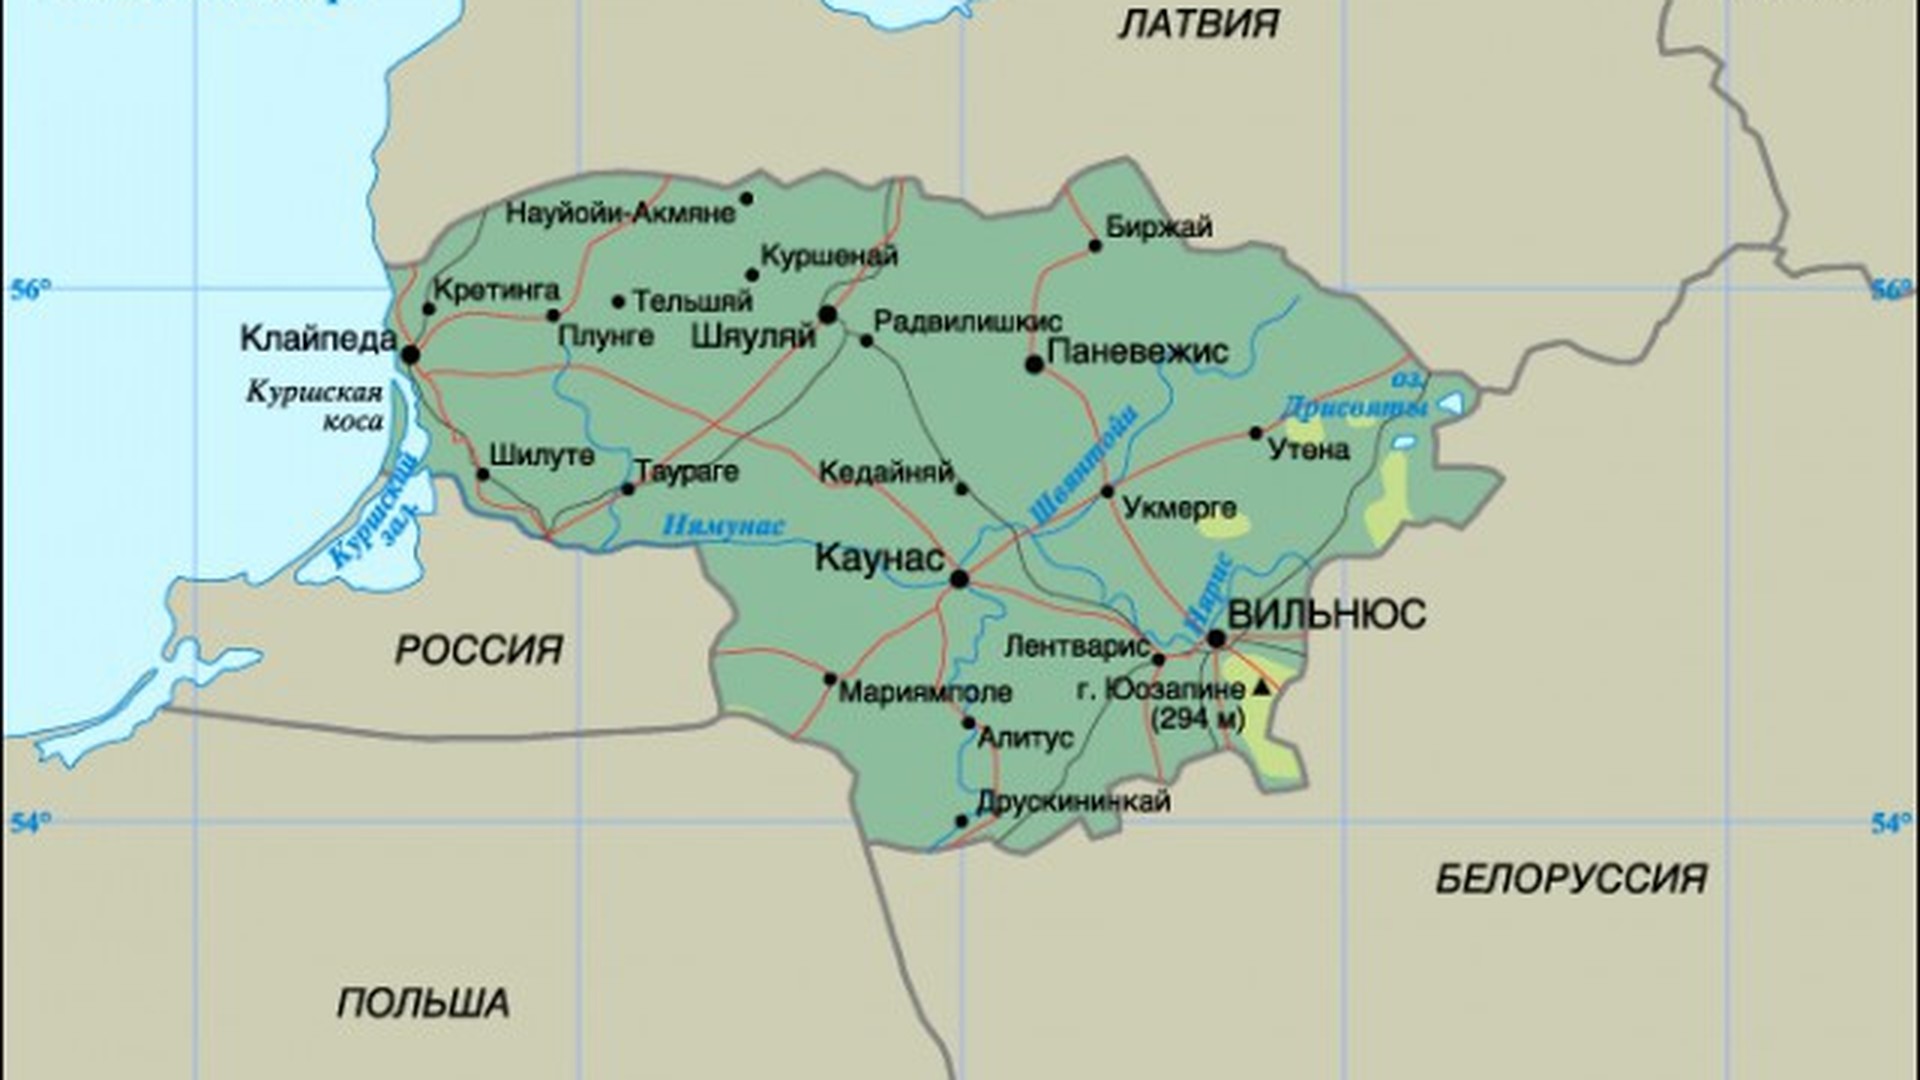 Границы Литвы на карте